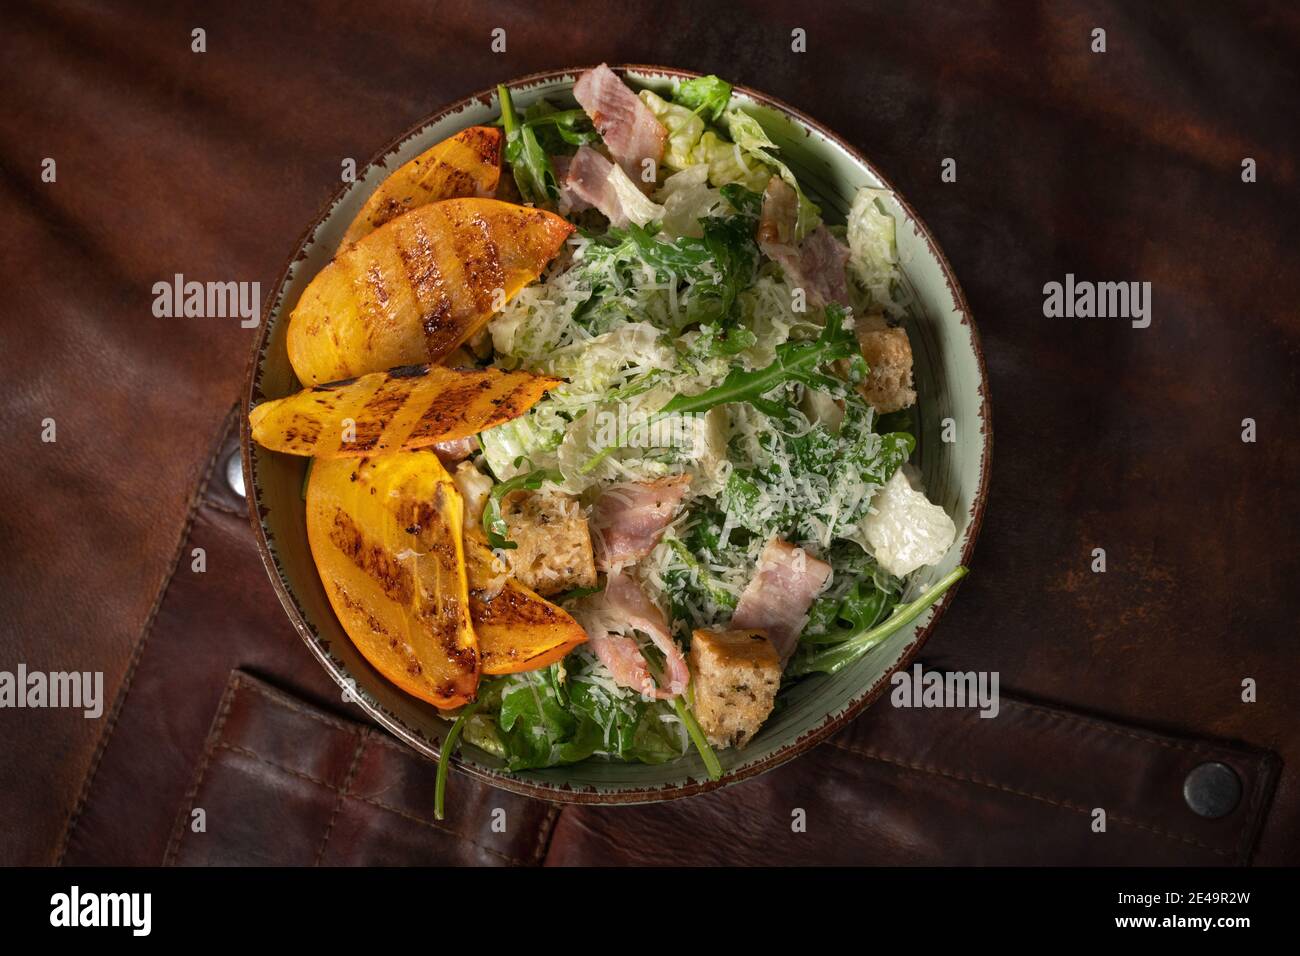 Vue de dessus d'un bol de salade fraîche avec du saumon, de la mozzarella et des tranches de fruits grillées se dresse sur une table recouverte d'un chiffon en cuir. Restaurant Banque D'Images